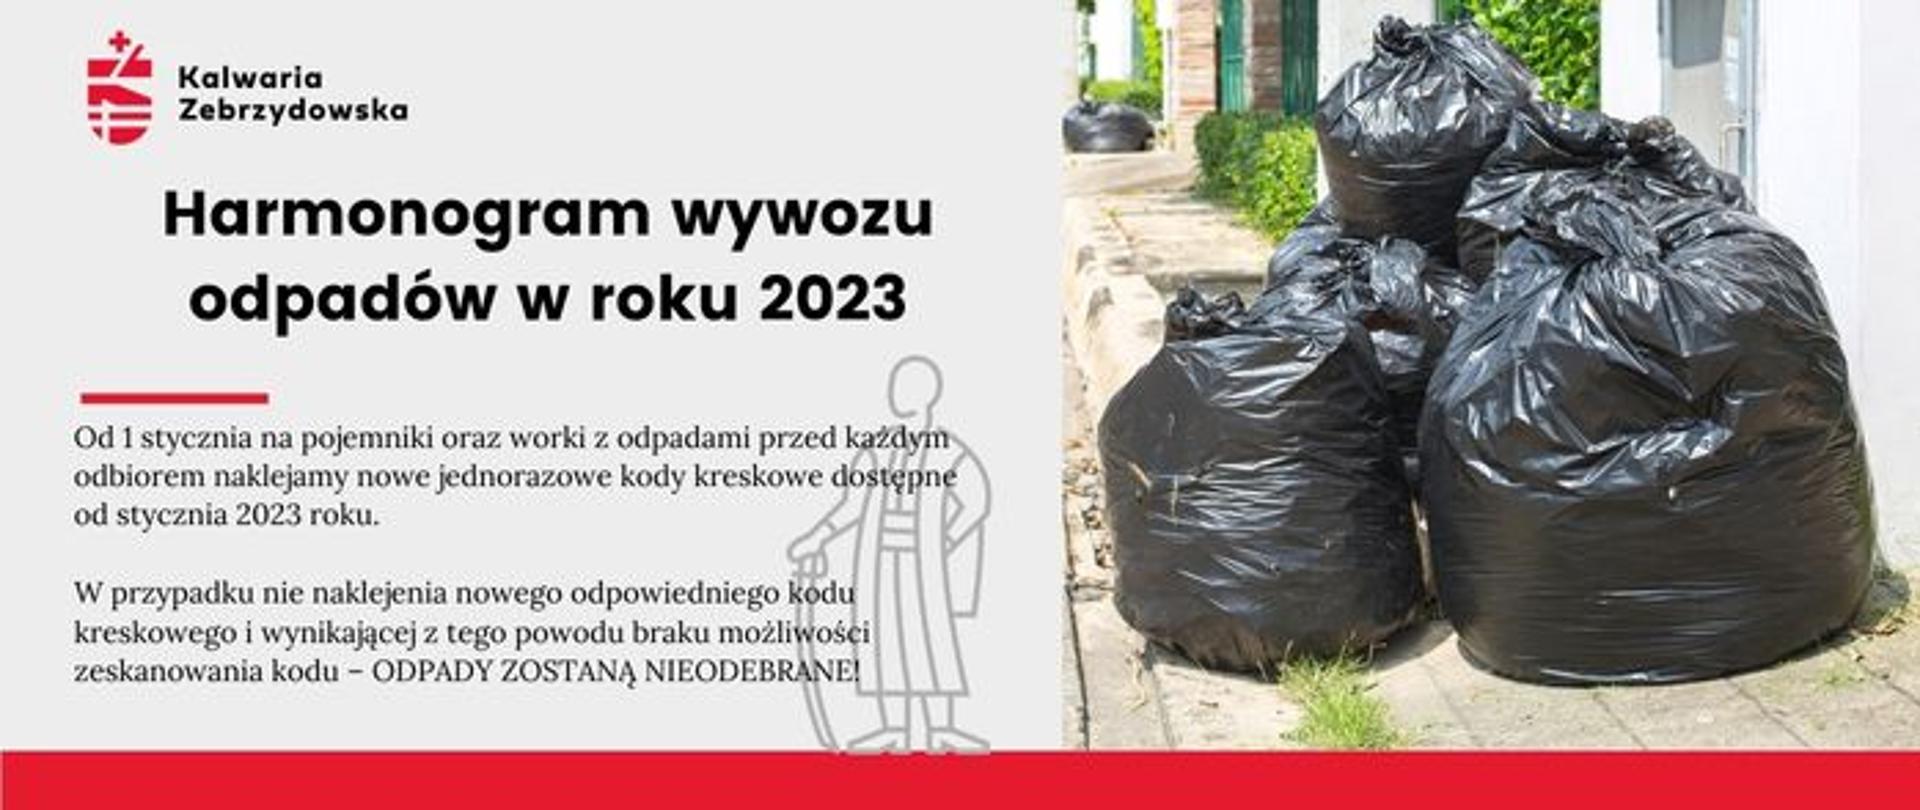 Plansza informacyjna z tekstem - Harmonogram wywozu odpadów w roku 2023, po prawej zdjęcie czarnych worków ze śmieciami.